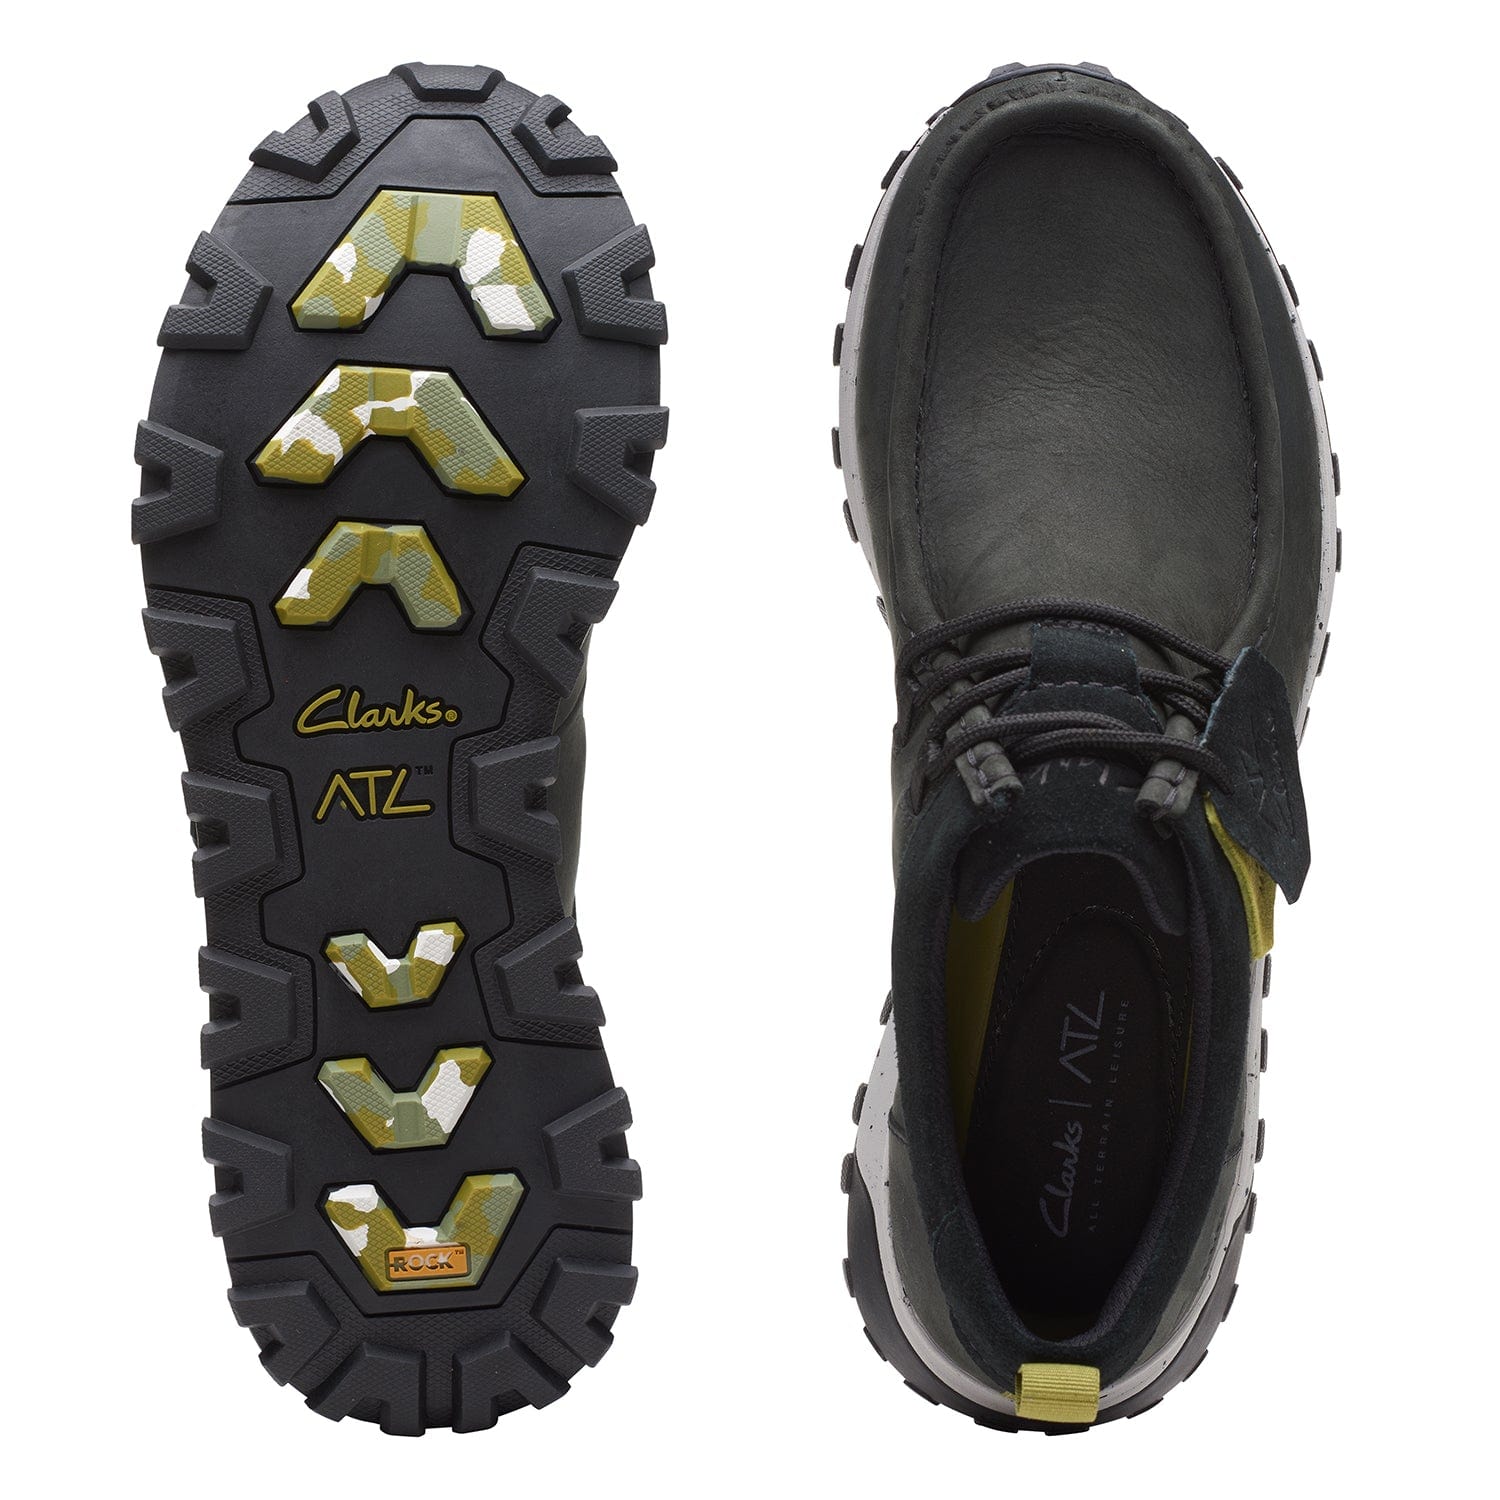 Clarks Atl Trek Wally - Shoes - Black Nubuck - 261656817 - G Width (Standard Fit)